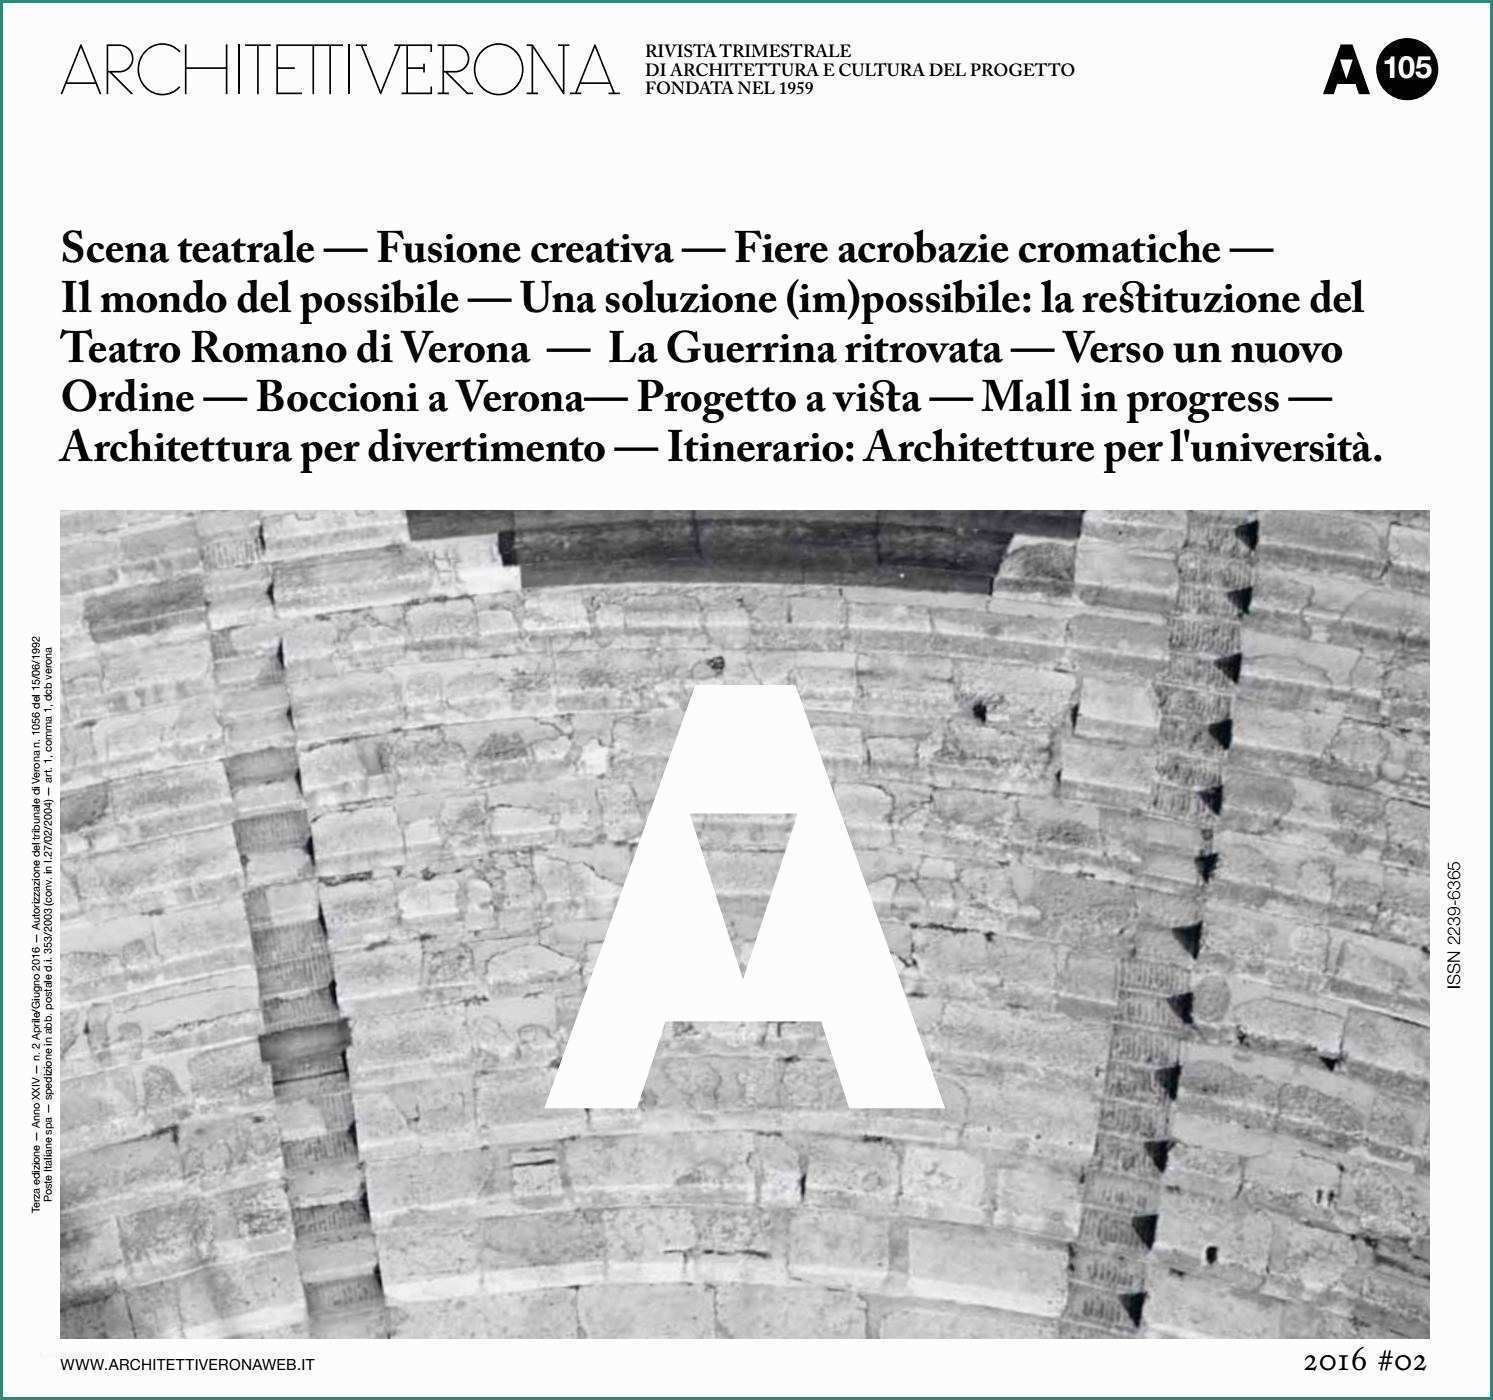 Costo Ristrutturazione Appartamento Mq E Architettiverona 105 by Architettiverona issuu